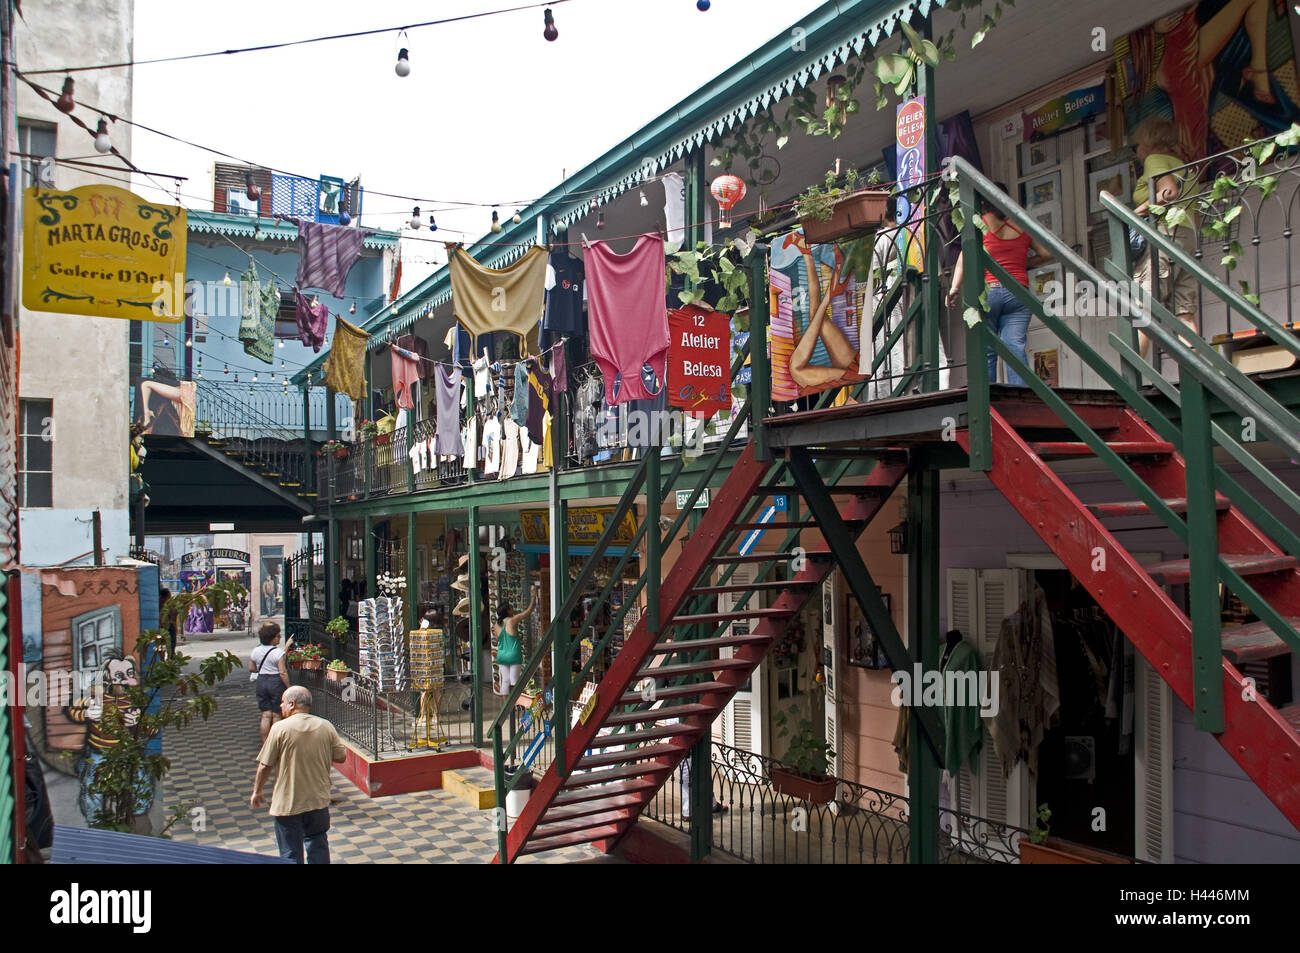 Argentina, Buenos Aires, La Boca, artista sobborgo, case colorate, cortile interno, negozi, Foto Stock